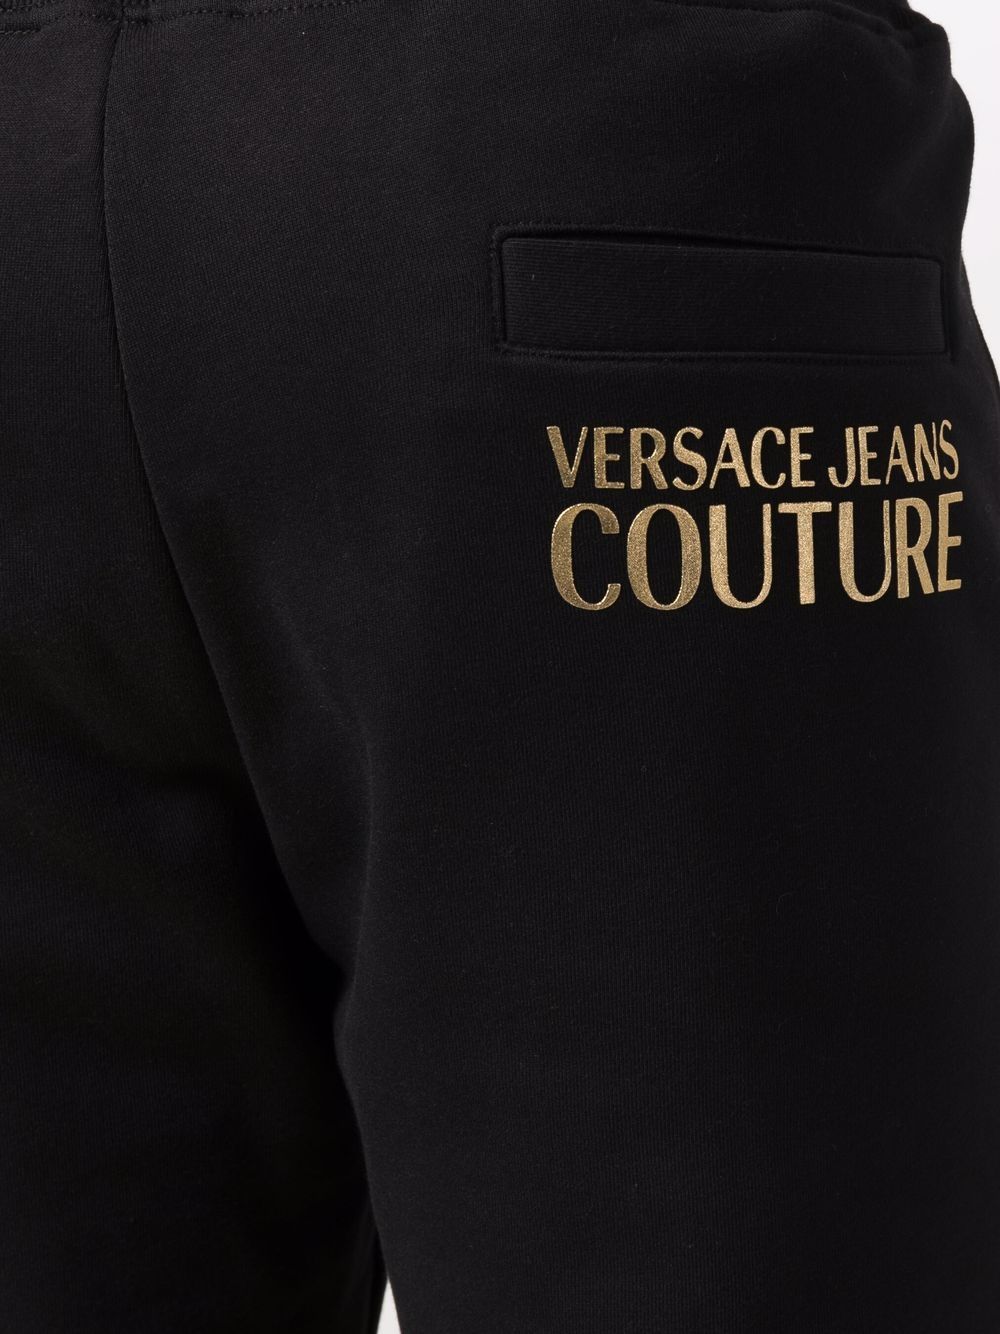 фото Versace jeans couture джоггеры с логотипом